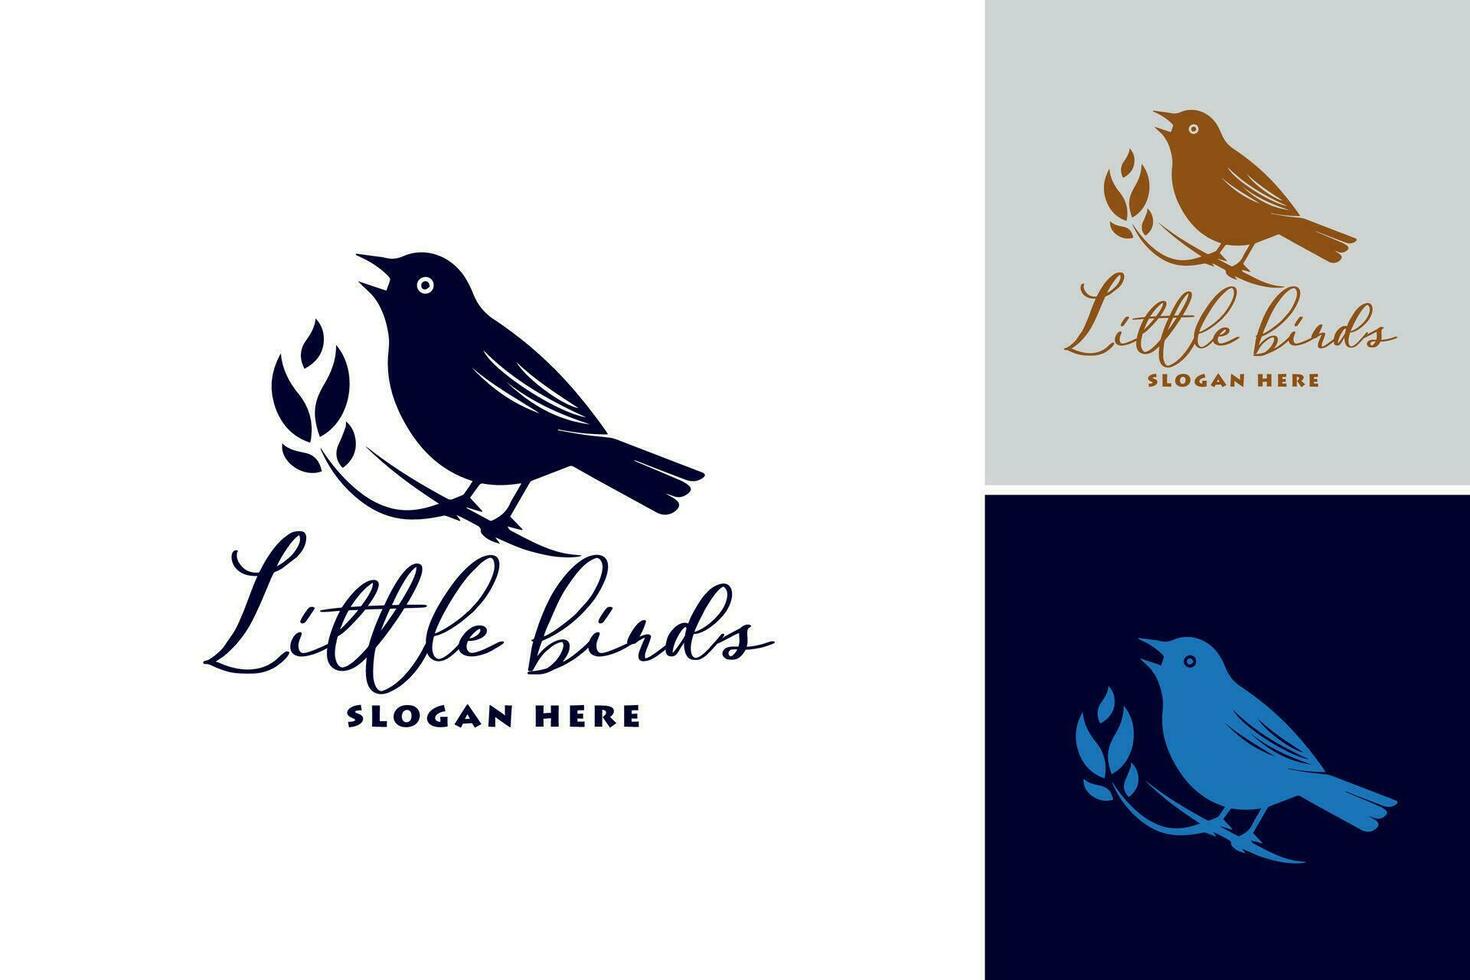 pequeño aves logo sugiere ese esta logo diseño activo es un logo presentando pequeño pájaro elementos. eso es adecuado para industrias relacionado a naturaleza, aves, o Respetuoso del medio ambiente marcas vector